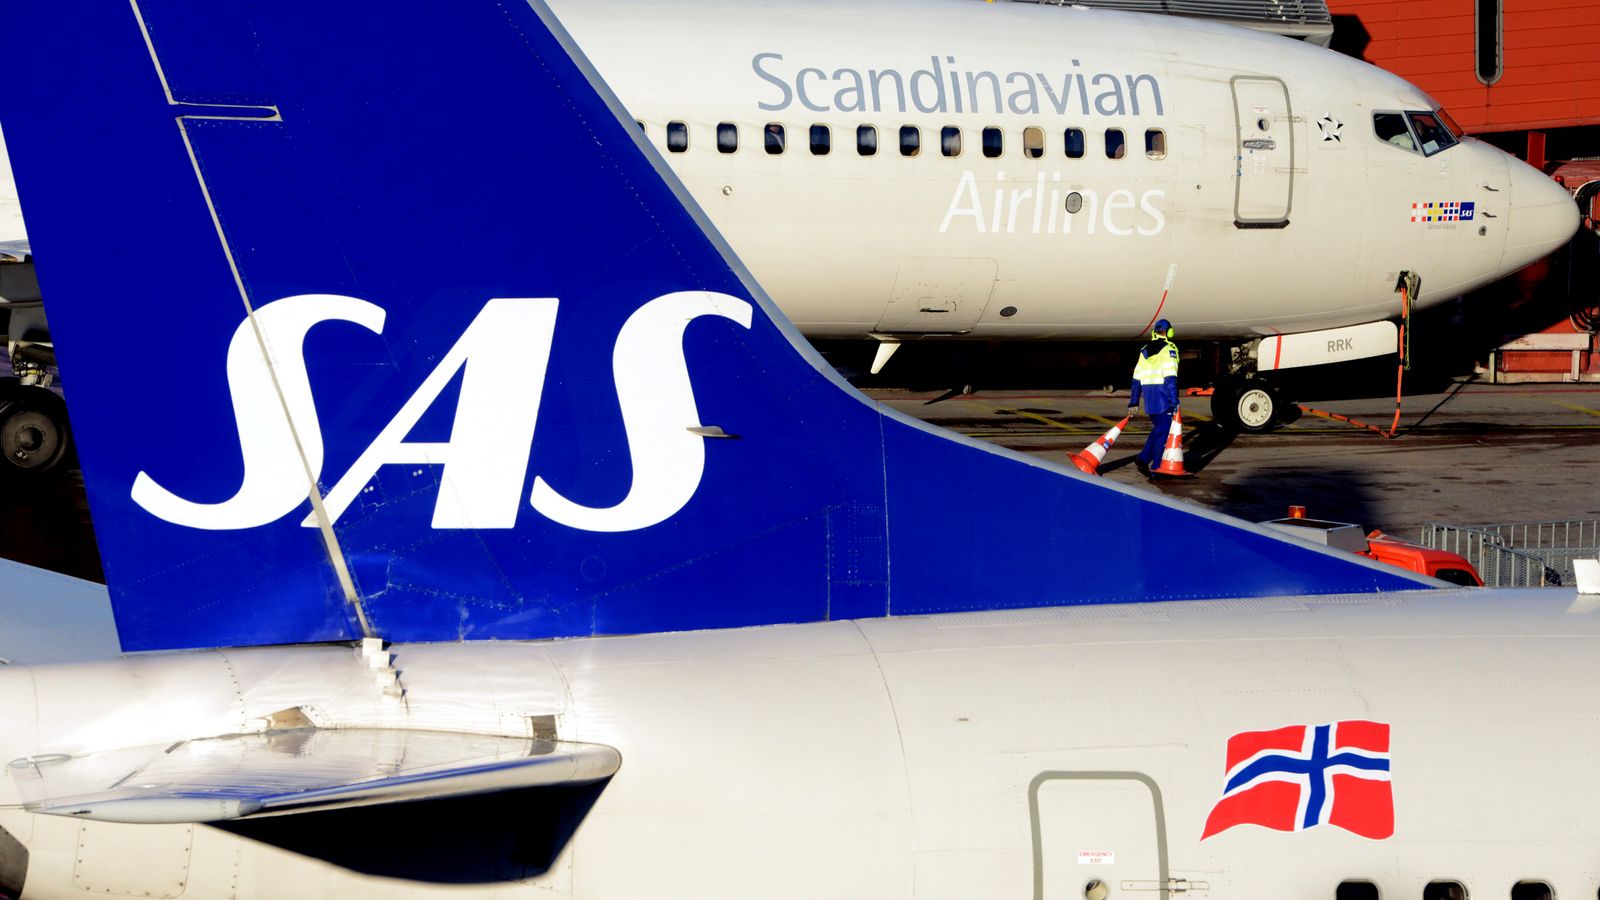 Руски пътник без билет се „почерпи със самолетна храна“, след като се качи на борда на полета Копенхаген за LA без билет или паспорт, казва ФБР